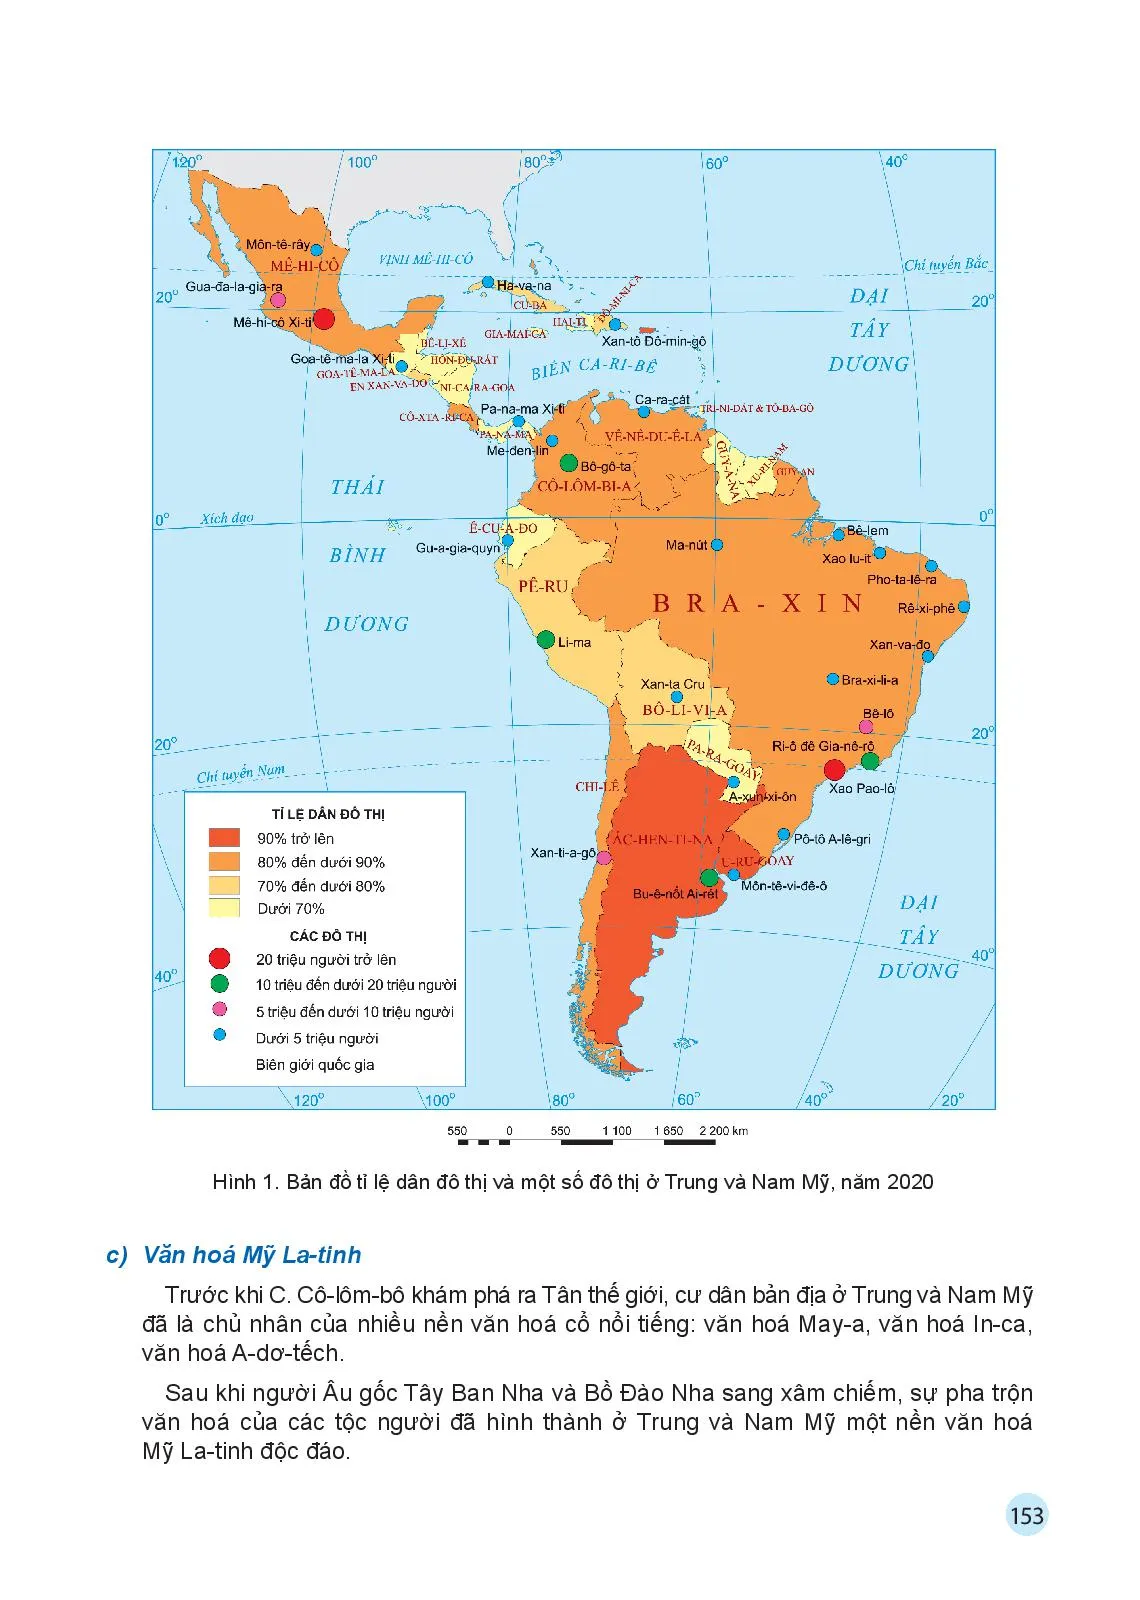 Bài 17 Đặc điểm dân cư, xã hội Trung và Nam Mỹ, khai thác, sử dụng và bảo vệ rừng A-ma-dôn